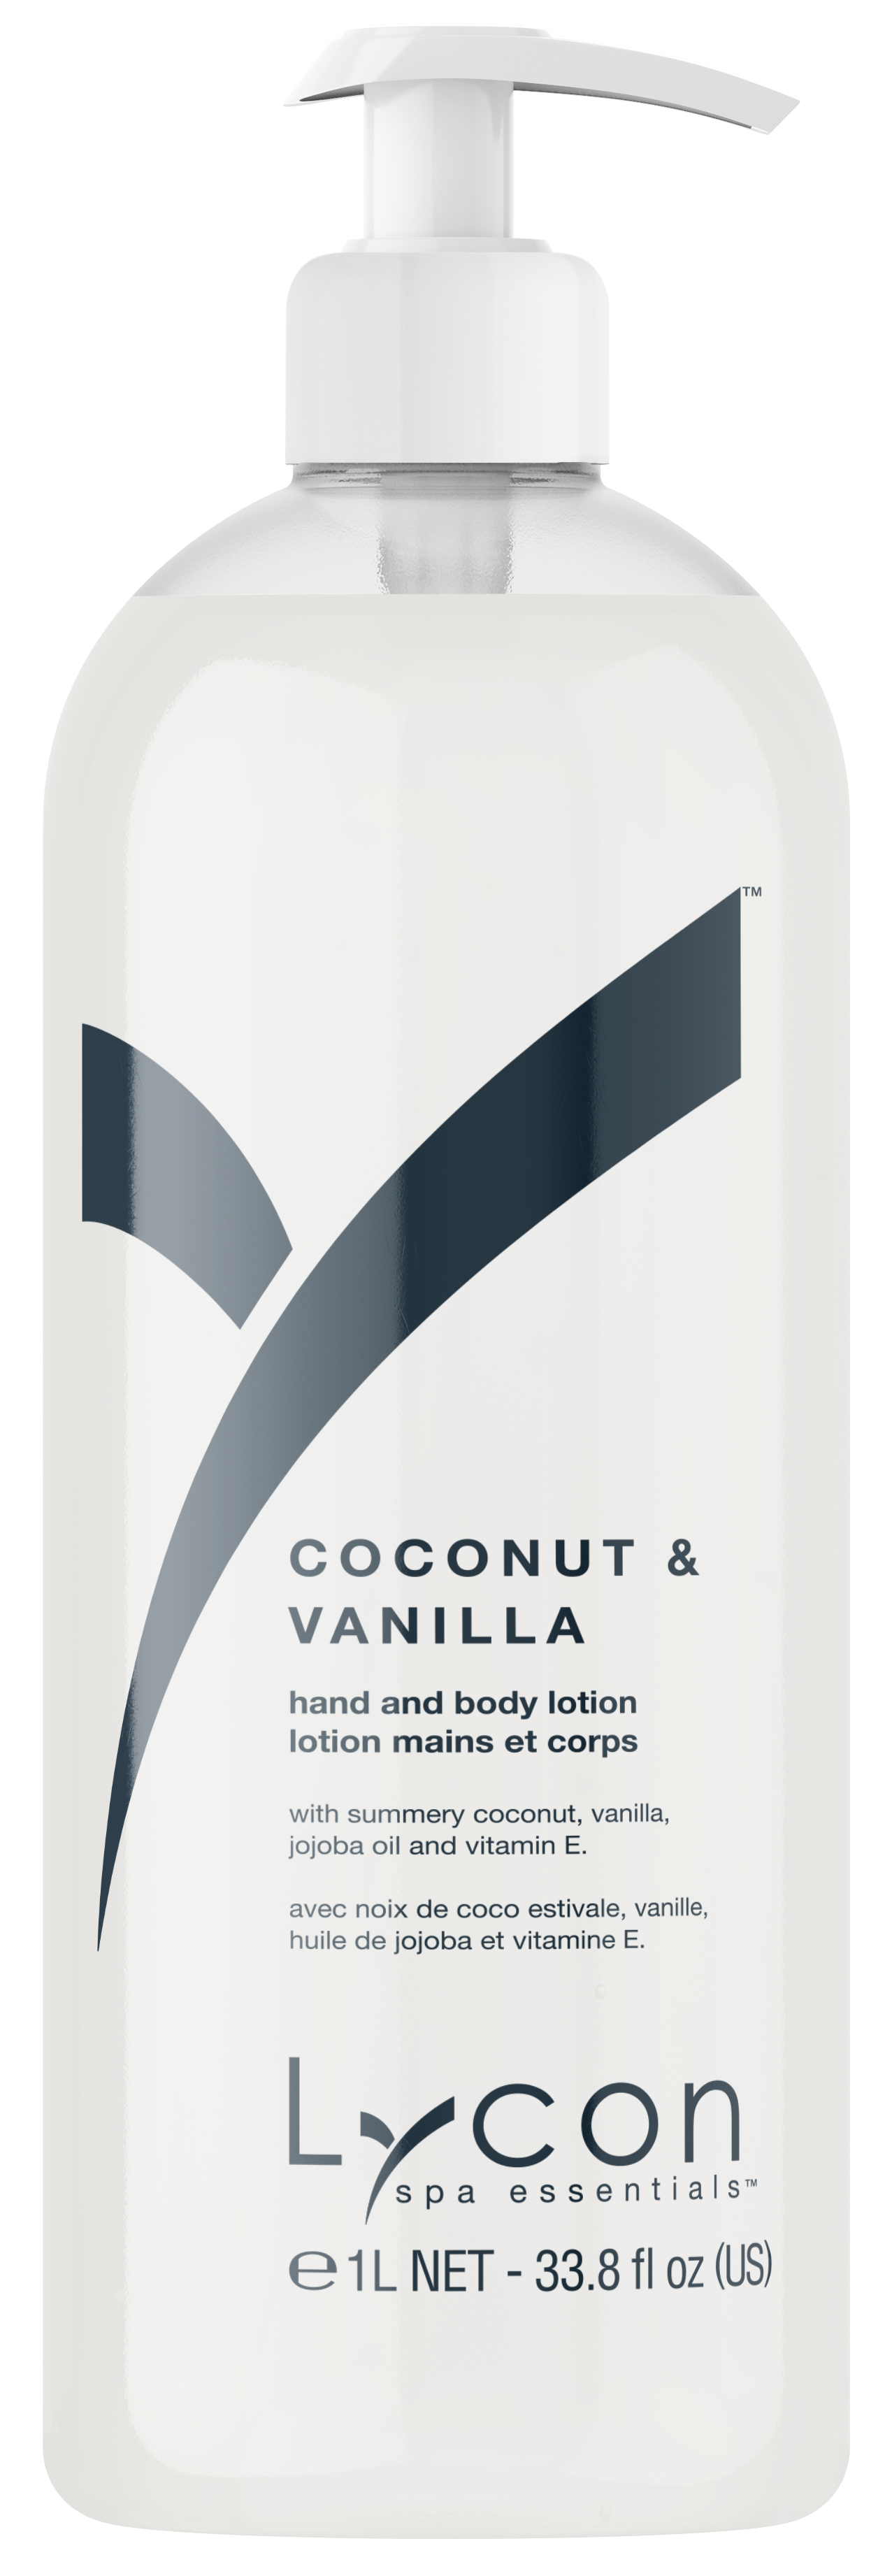 Coconut & Vanilla hand & body lotion 1L